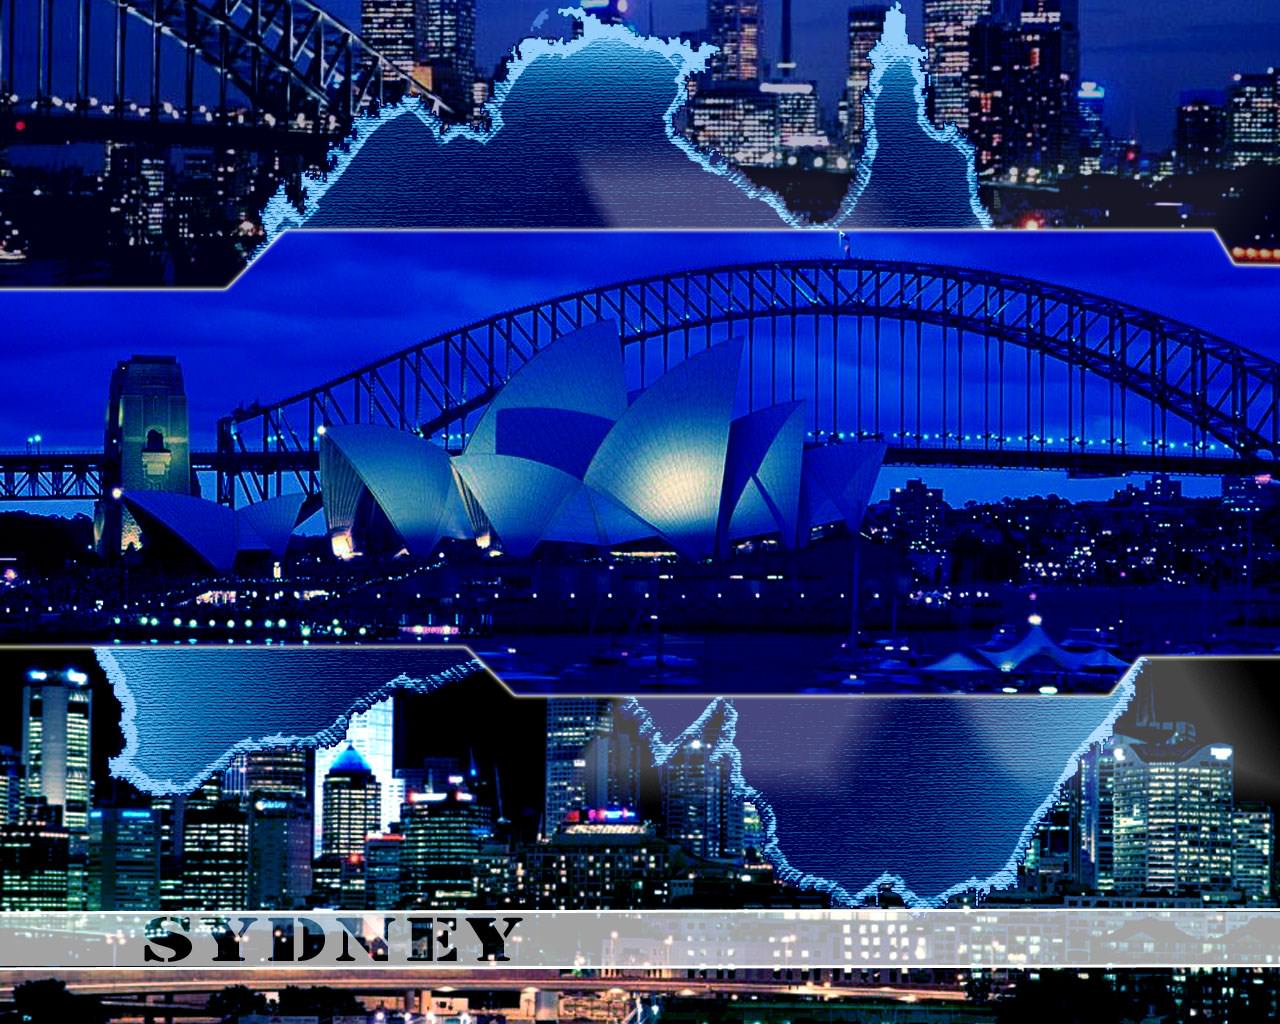 Sydney Sydney